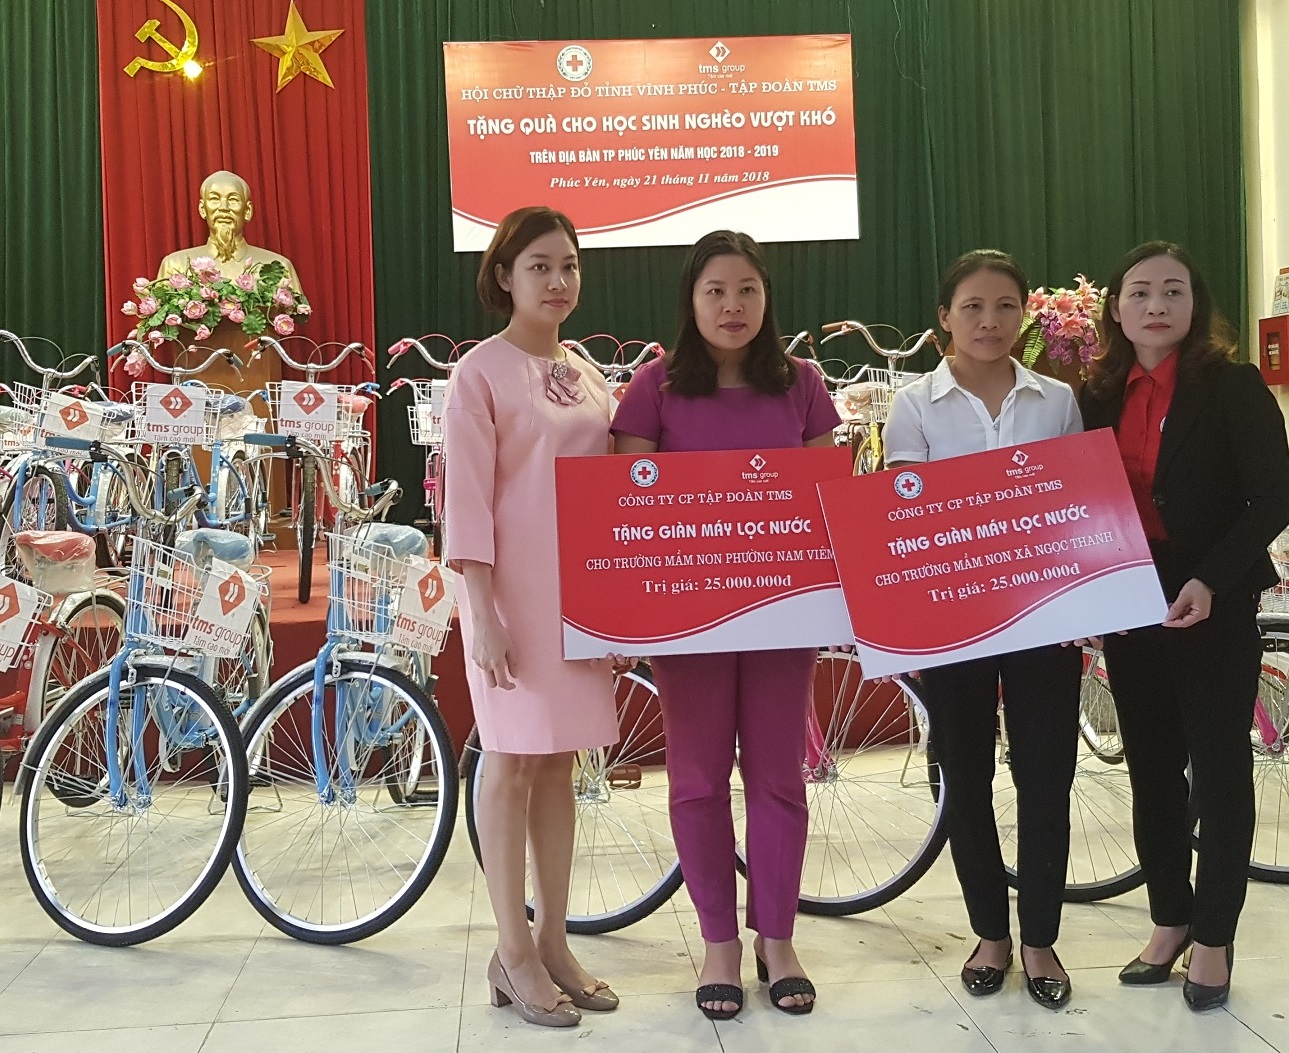 Bà Nguyễn Thủy Tiên - Giám đốc Kinh doanh Tập đoàn TMS (ngoài cùng bên trái) trao máy lọc nước cho 2 trường mầm non.